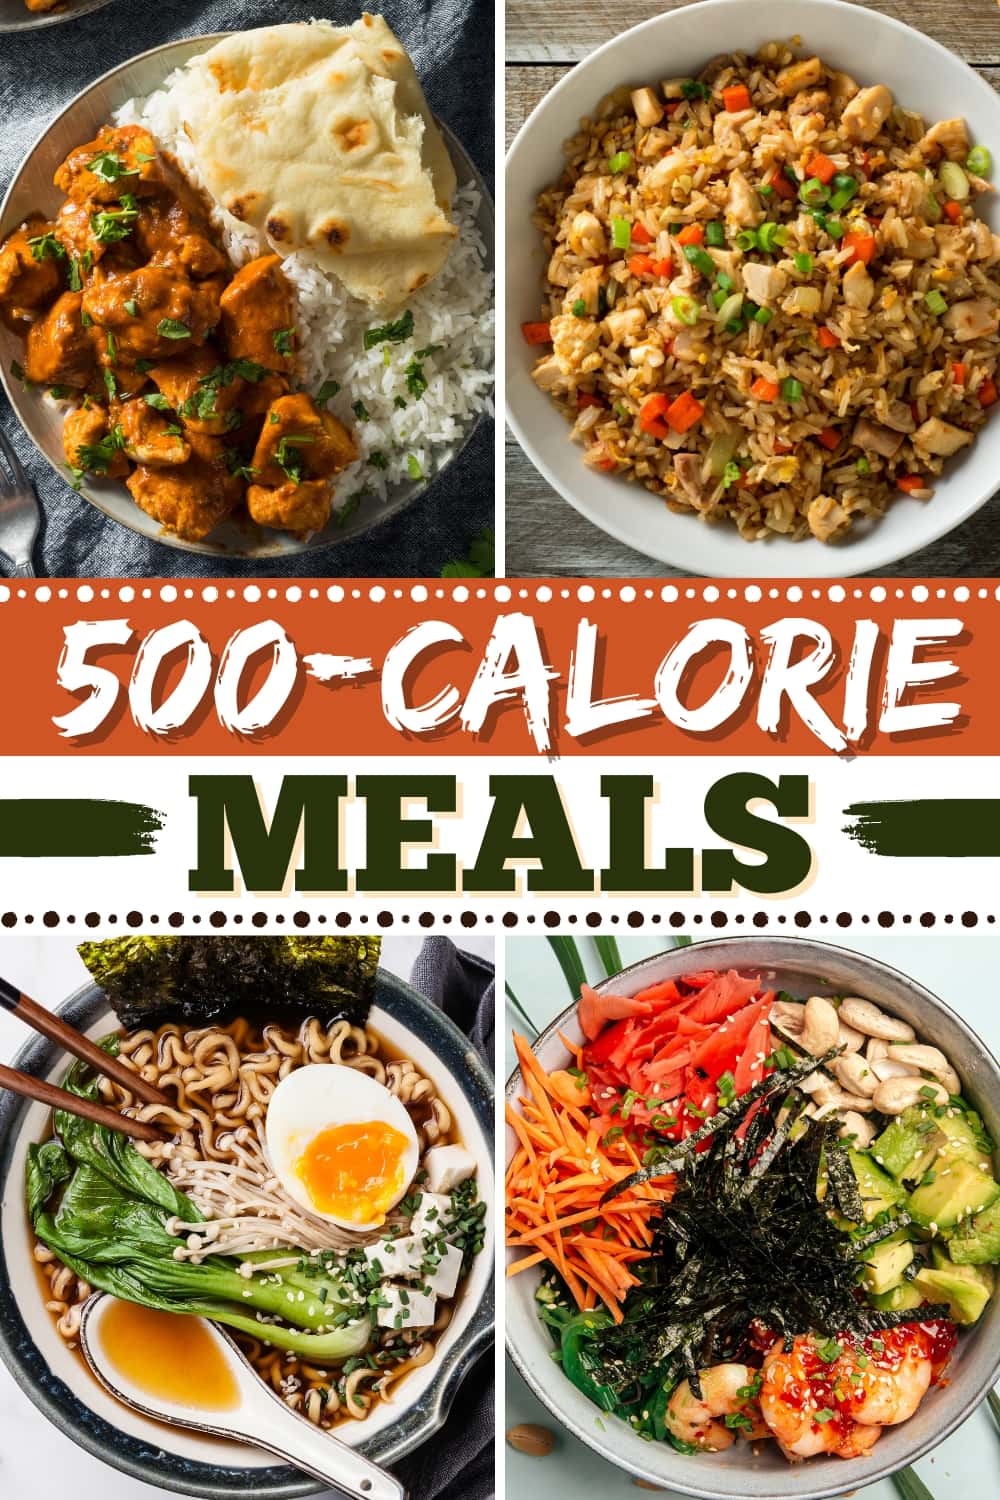 500-Calorie Meals